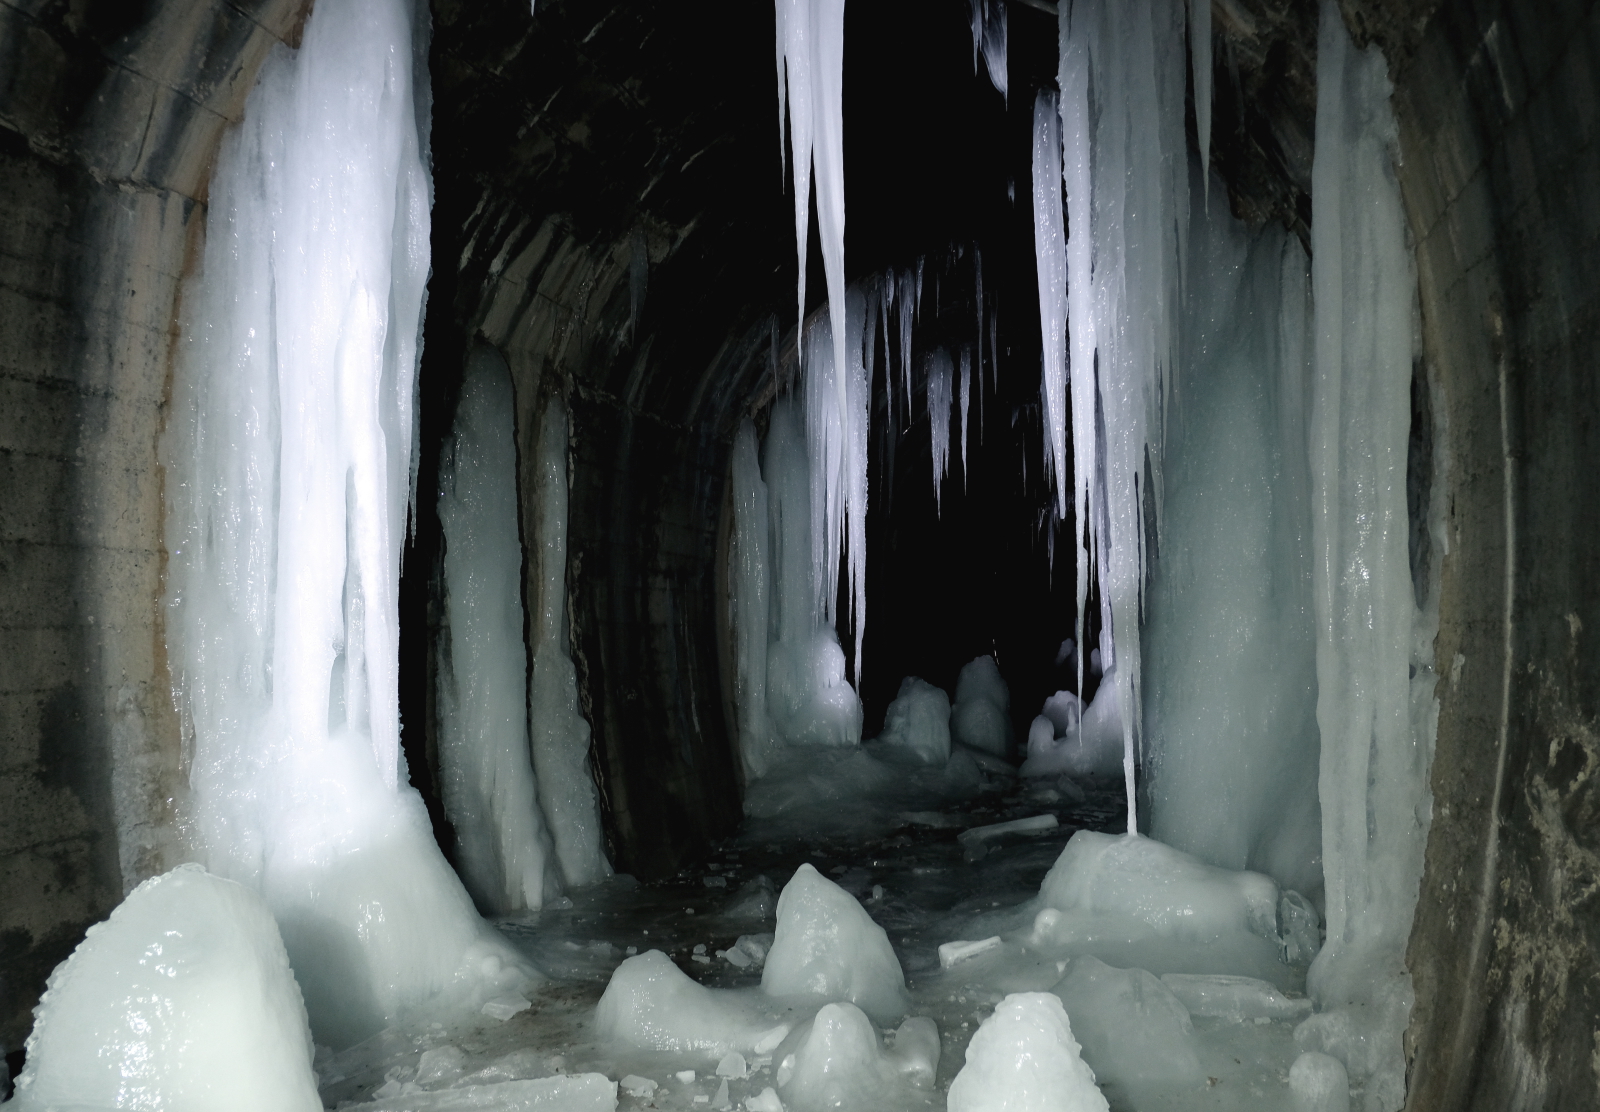 Potężne sople w tunelu kolejki wąskotorowej w Szklarach na Podkarpaciu. W czasie mrozów liczący 602 metry tunel przypomina lodową jaskinię z efektownymi stalaktytami i stalagmitami.